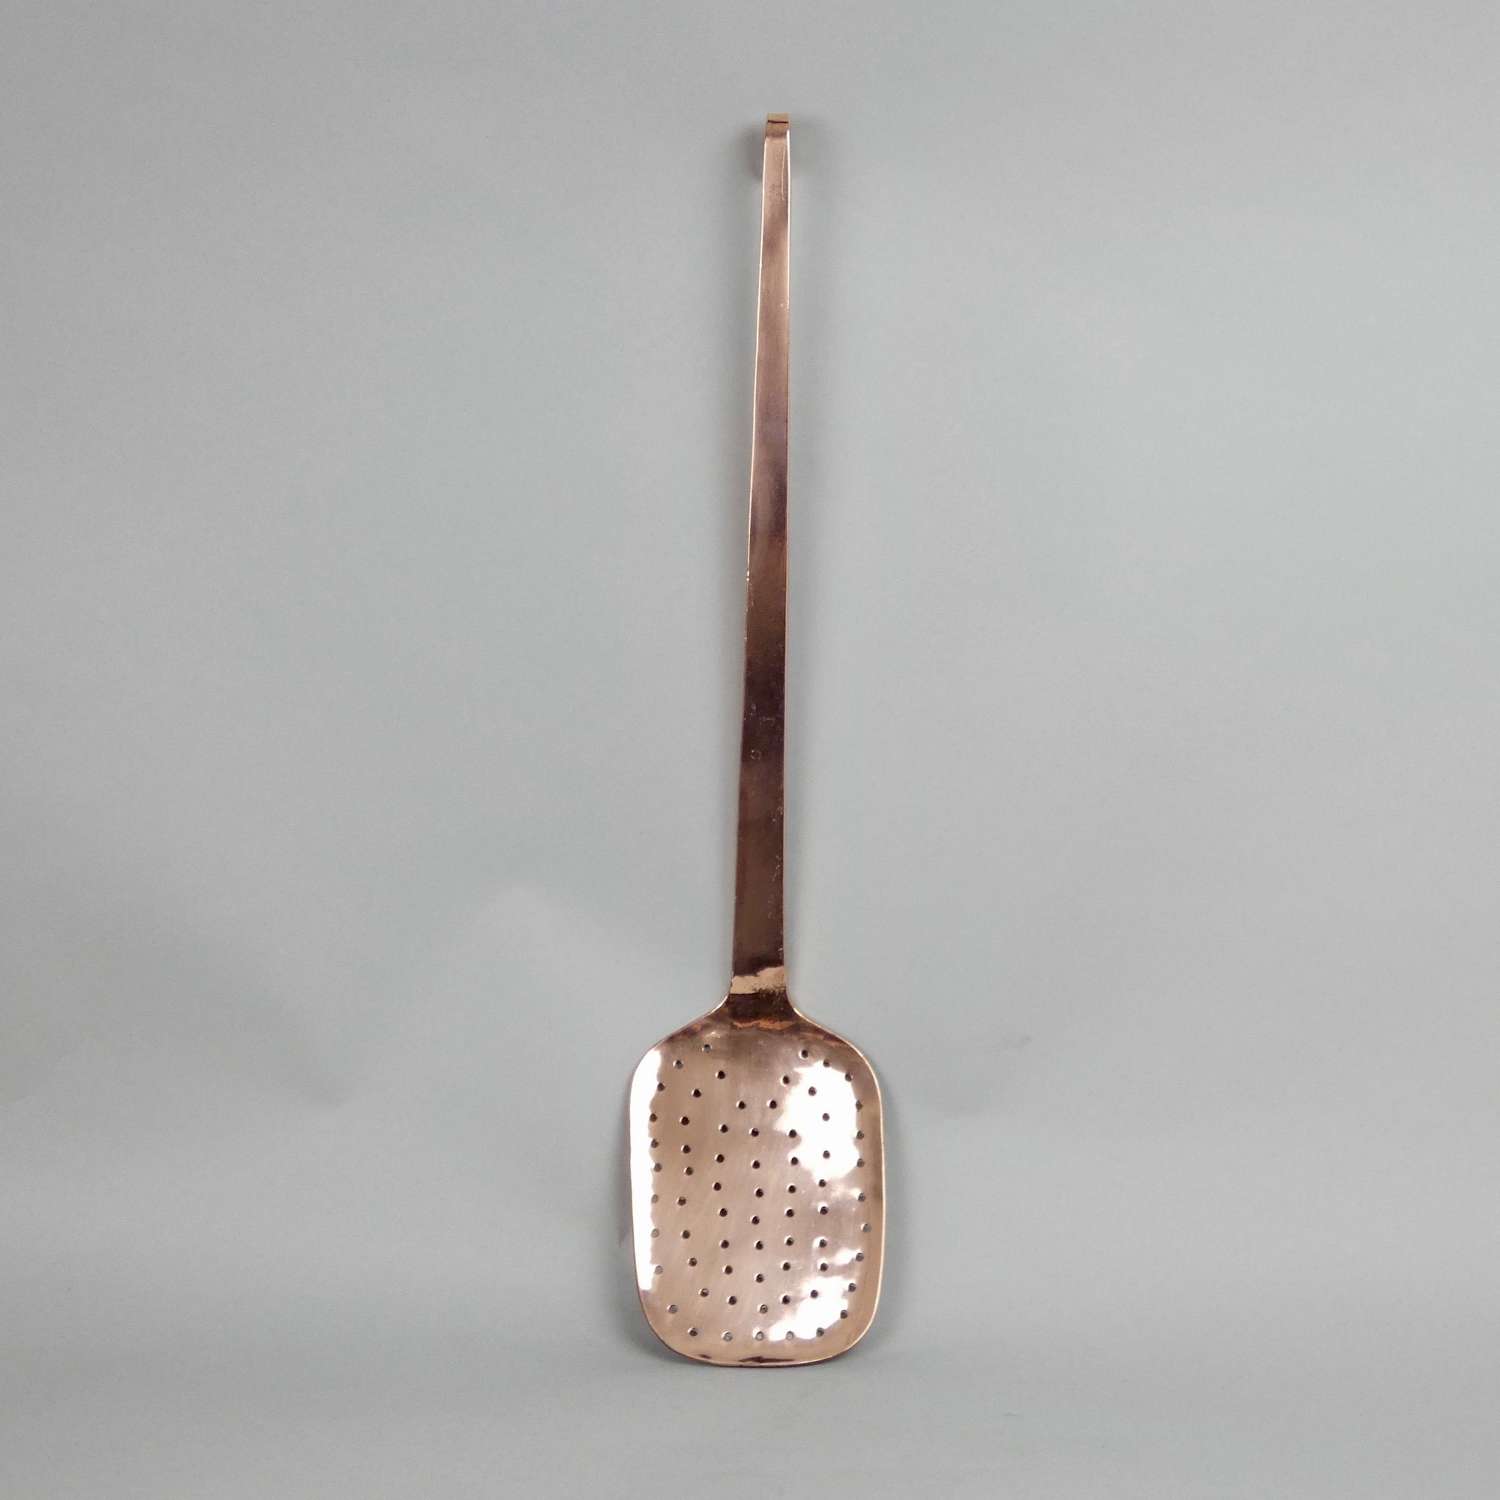 Small copper skimmer